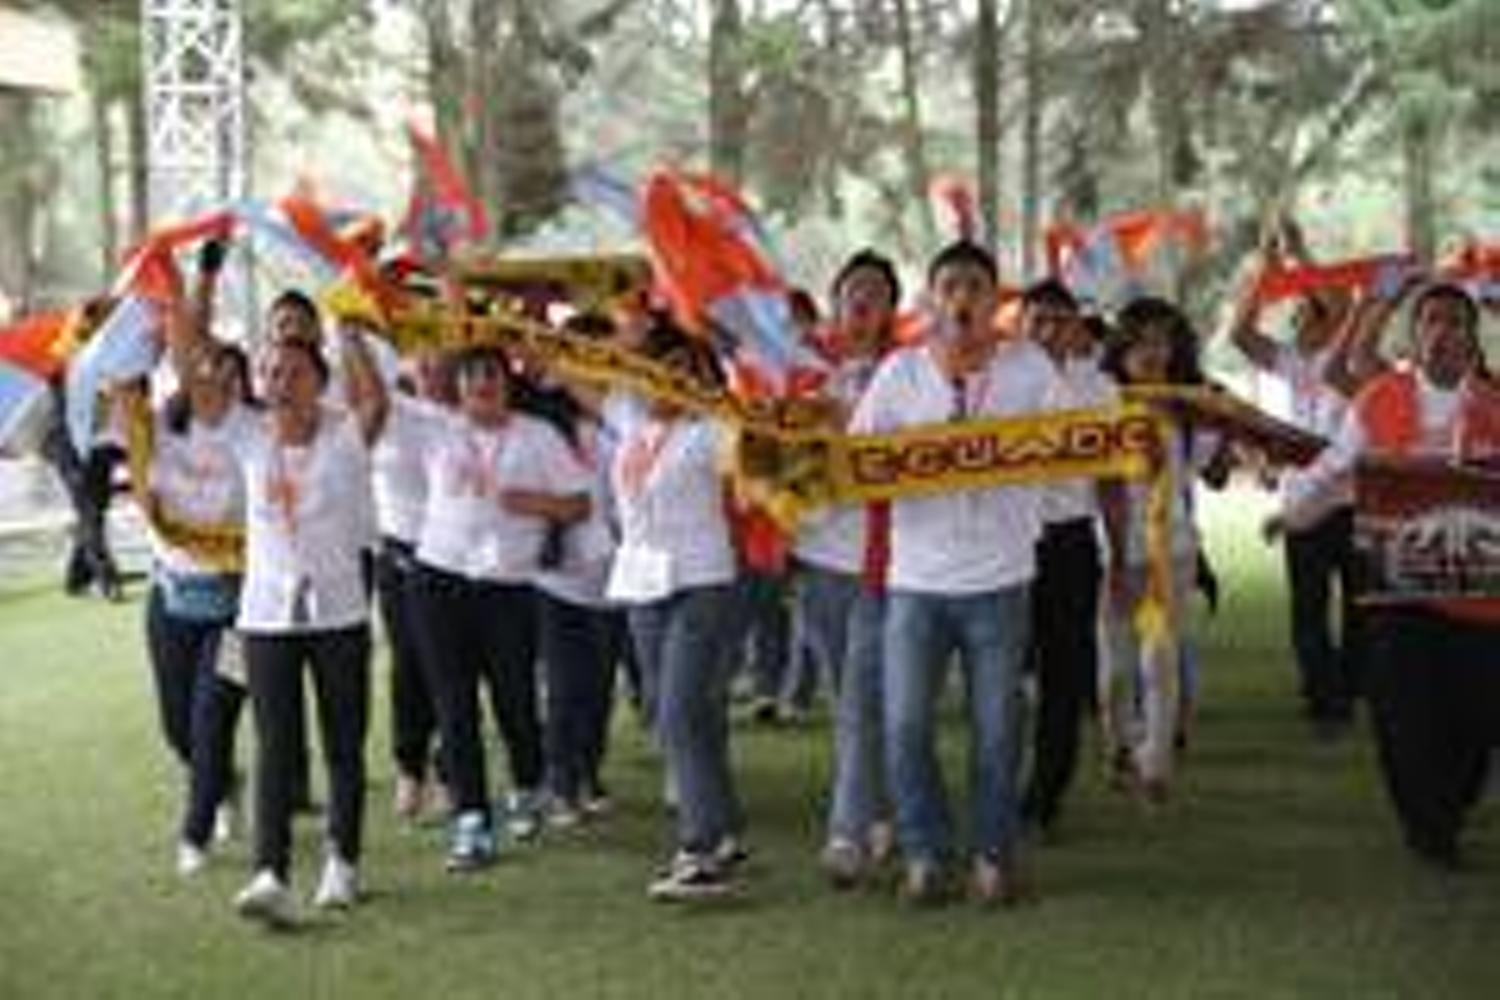 Los participantes ingresan a la carpa (todas las fotos: INA Ecuador)